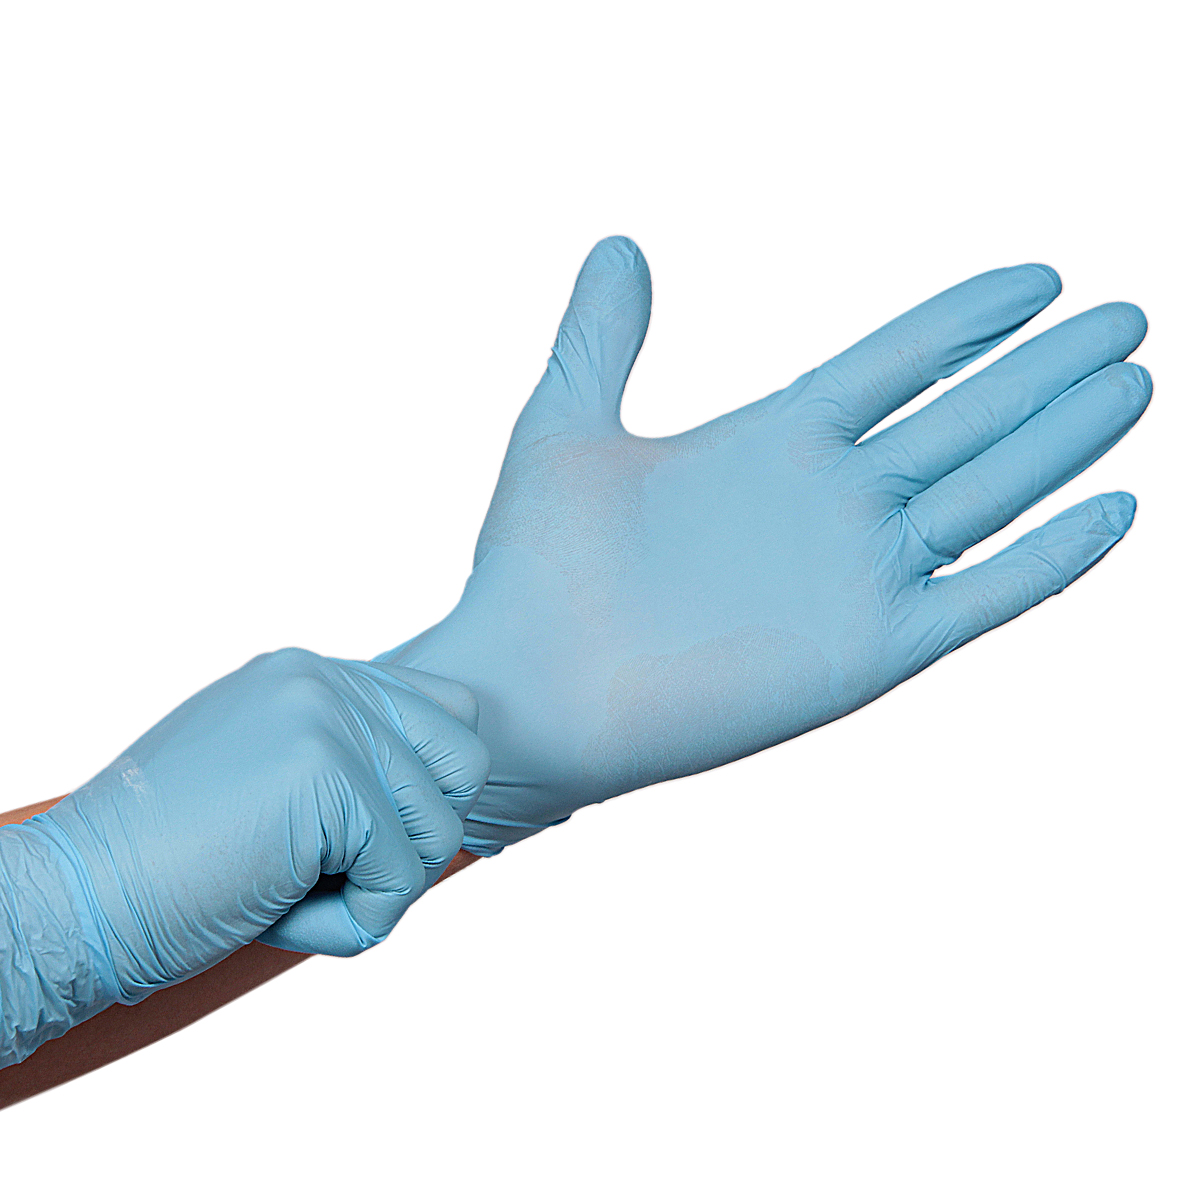 Par de guantes látex azul soporte textil